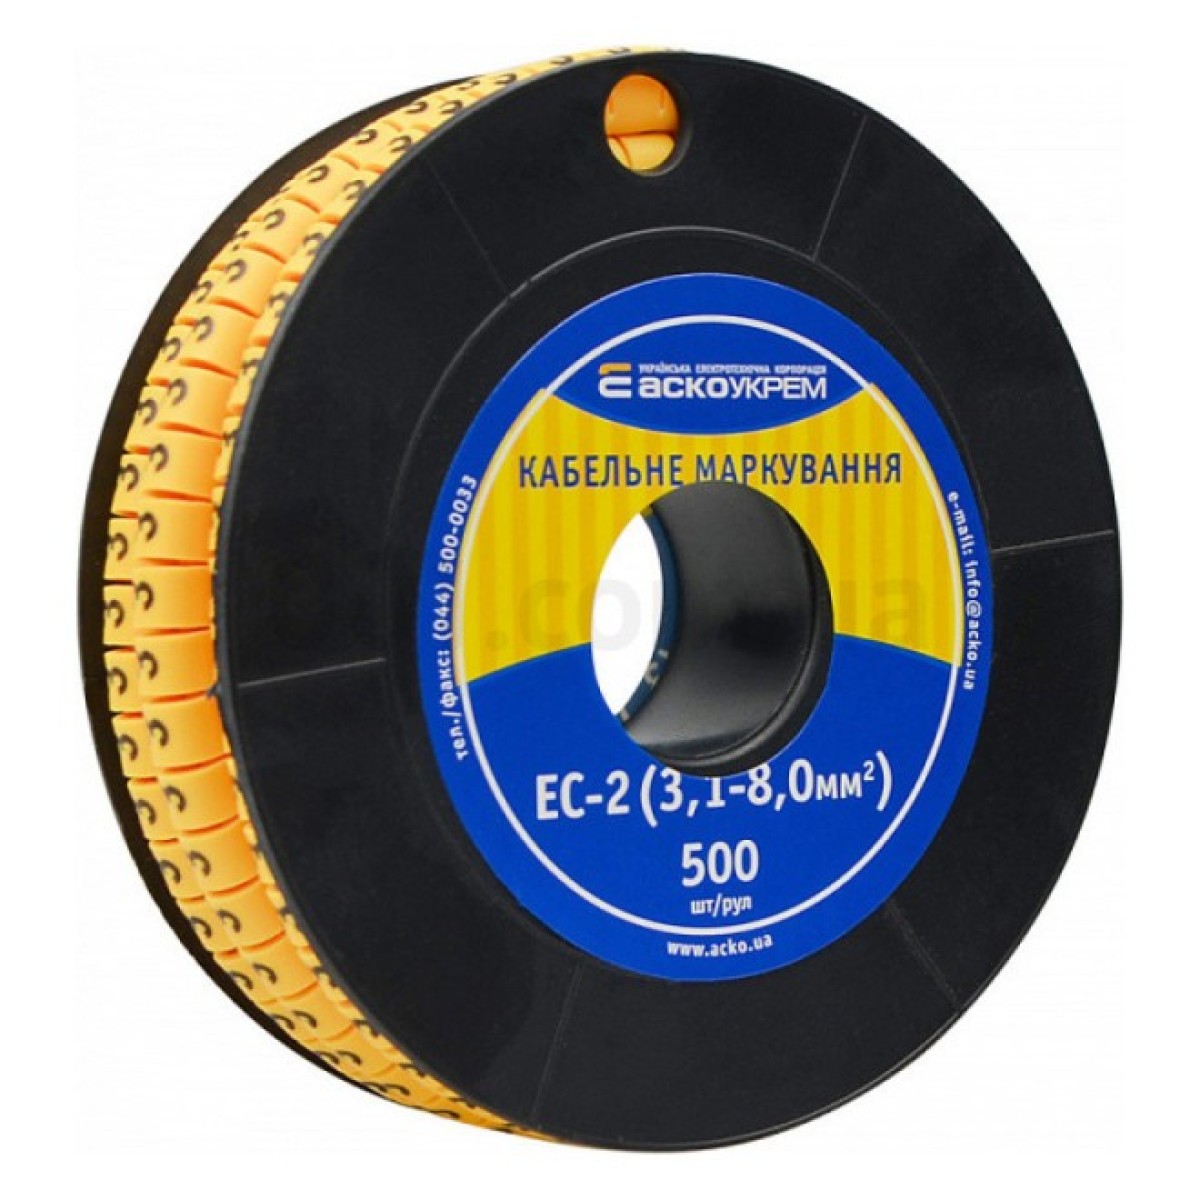 Маркування ЕС-2 для кабелю 3,1-8,0 мм² символ «3» (рулон 500 шт.), АСКО-УКРЕМ 98_98.jpg - фото 1